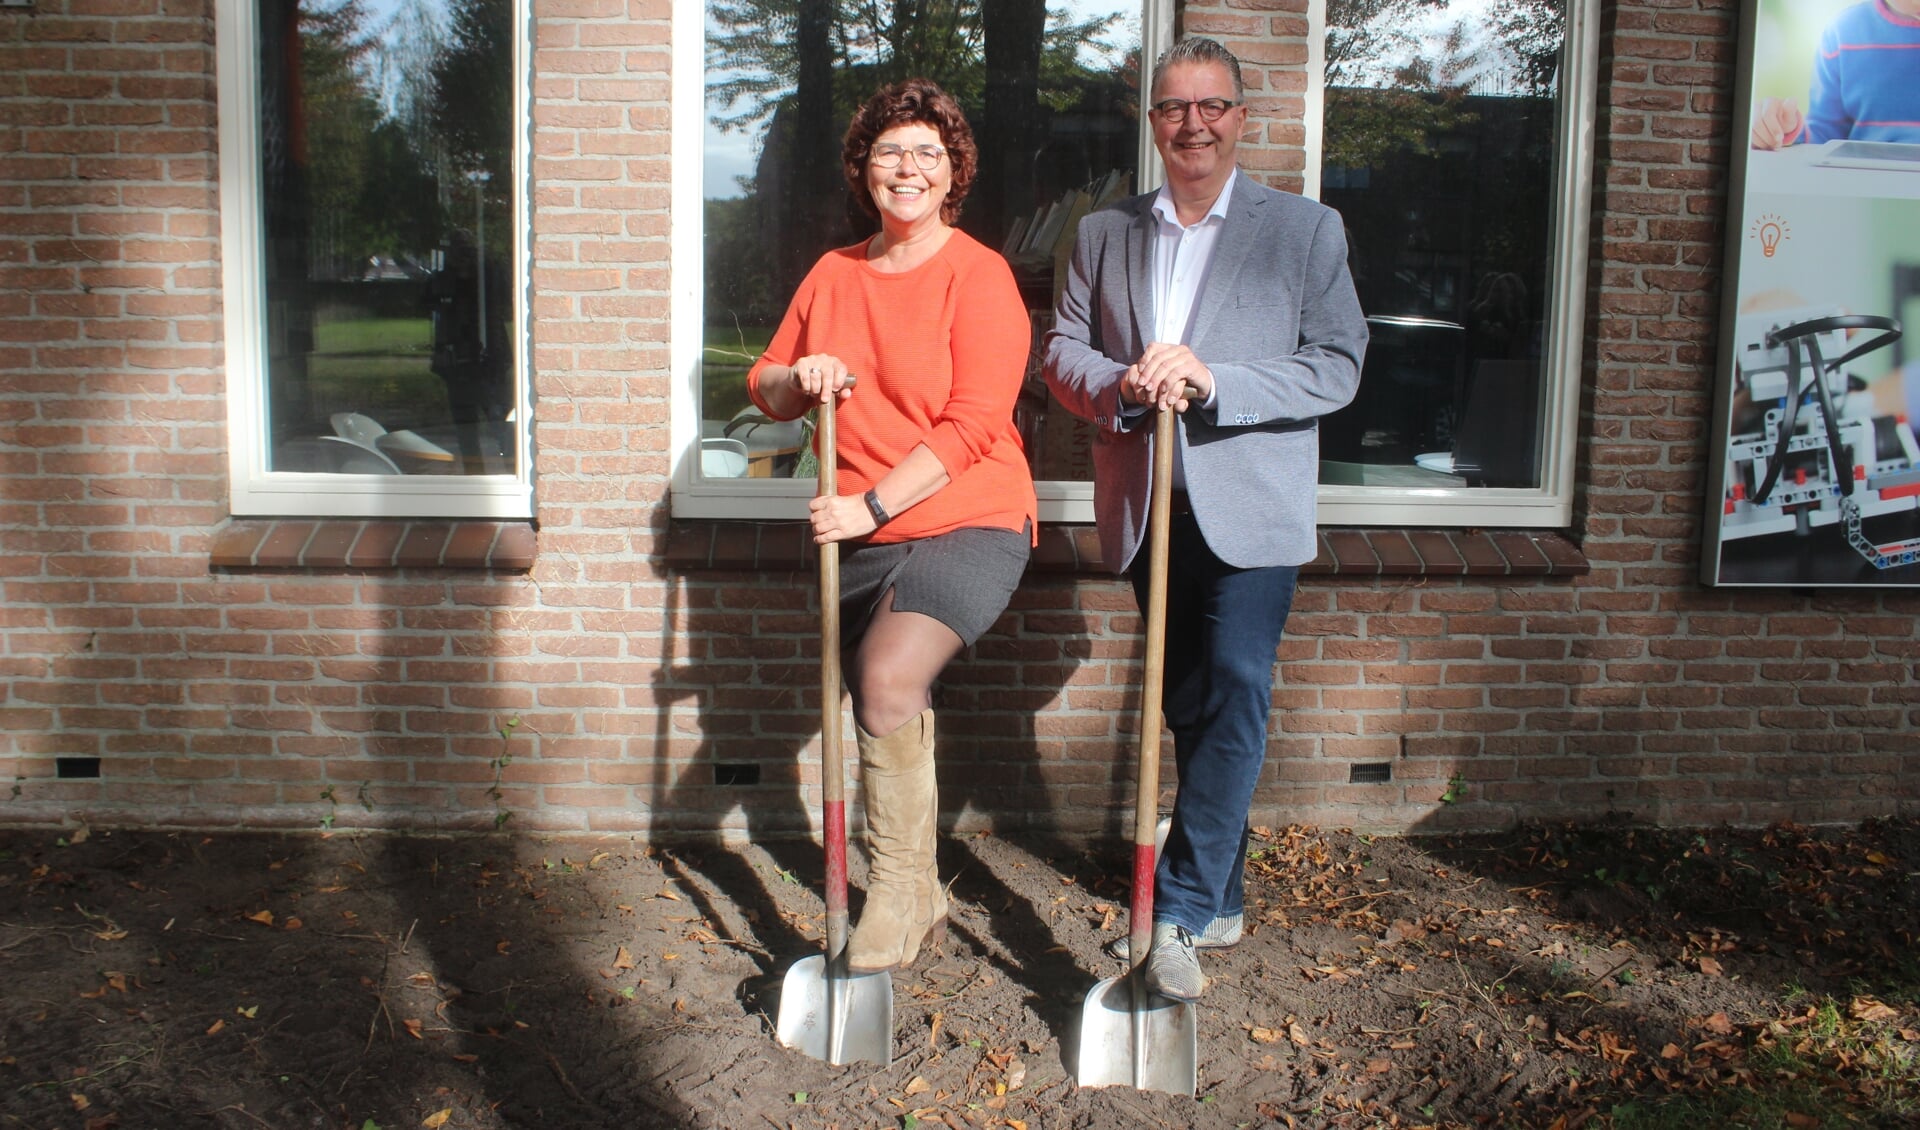 Bilbliotheekmanager Lammie van der Tuuk en wethouder Bas Luinge van Aa en Hunze zetten de eerste schop in de grond van de nieuwe bibliotheektuin. 